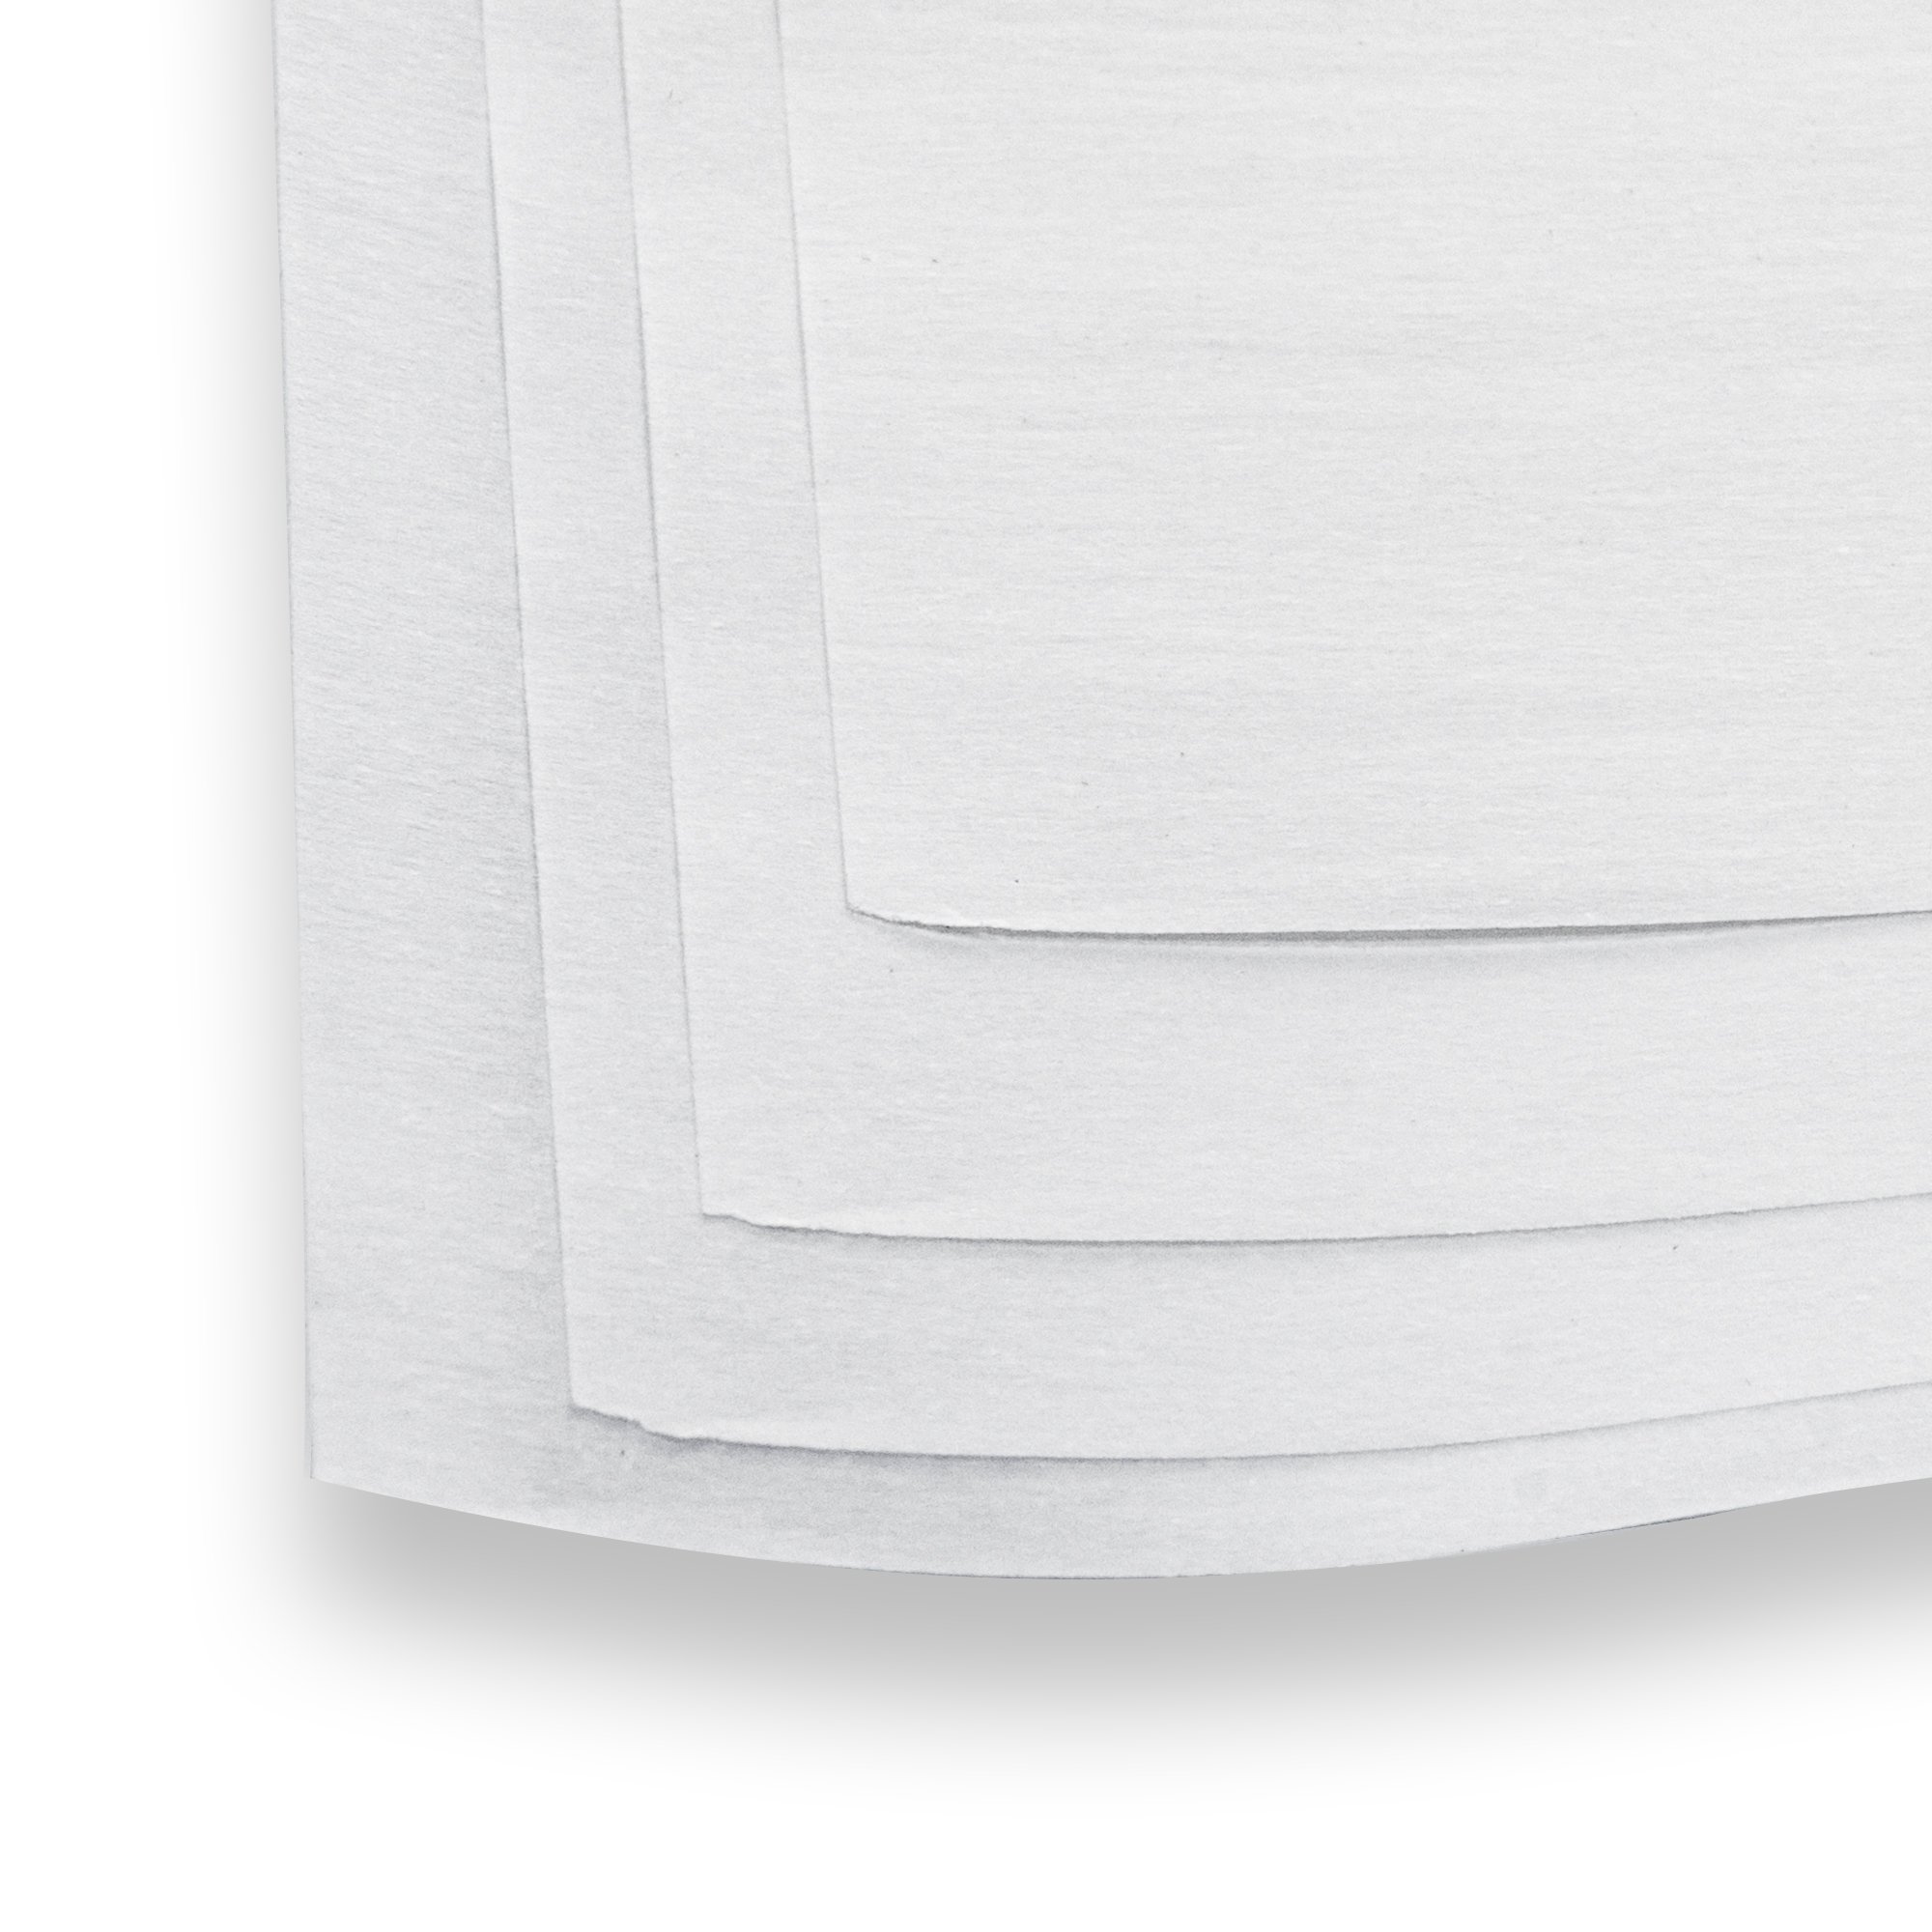 Rosin Parchment Paper - 1.5 x 3.5